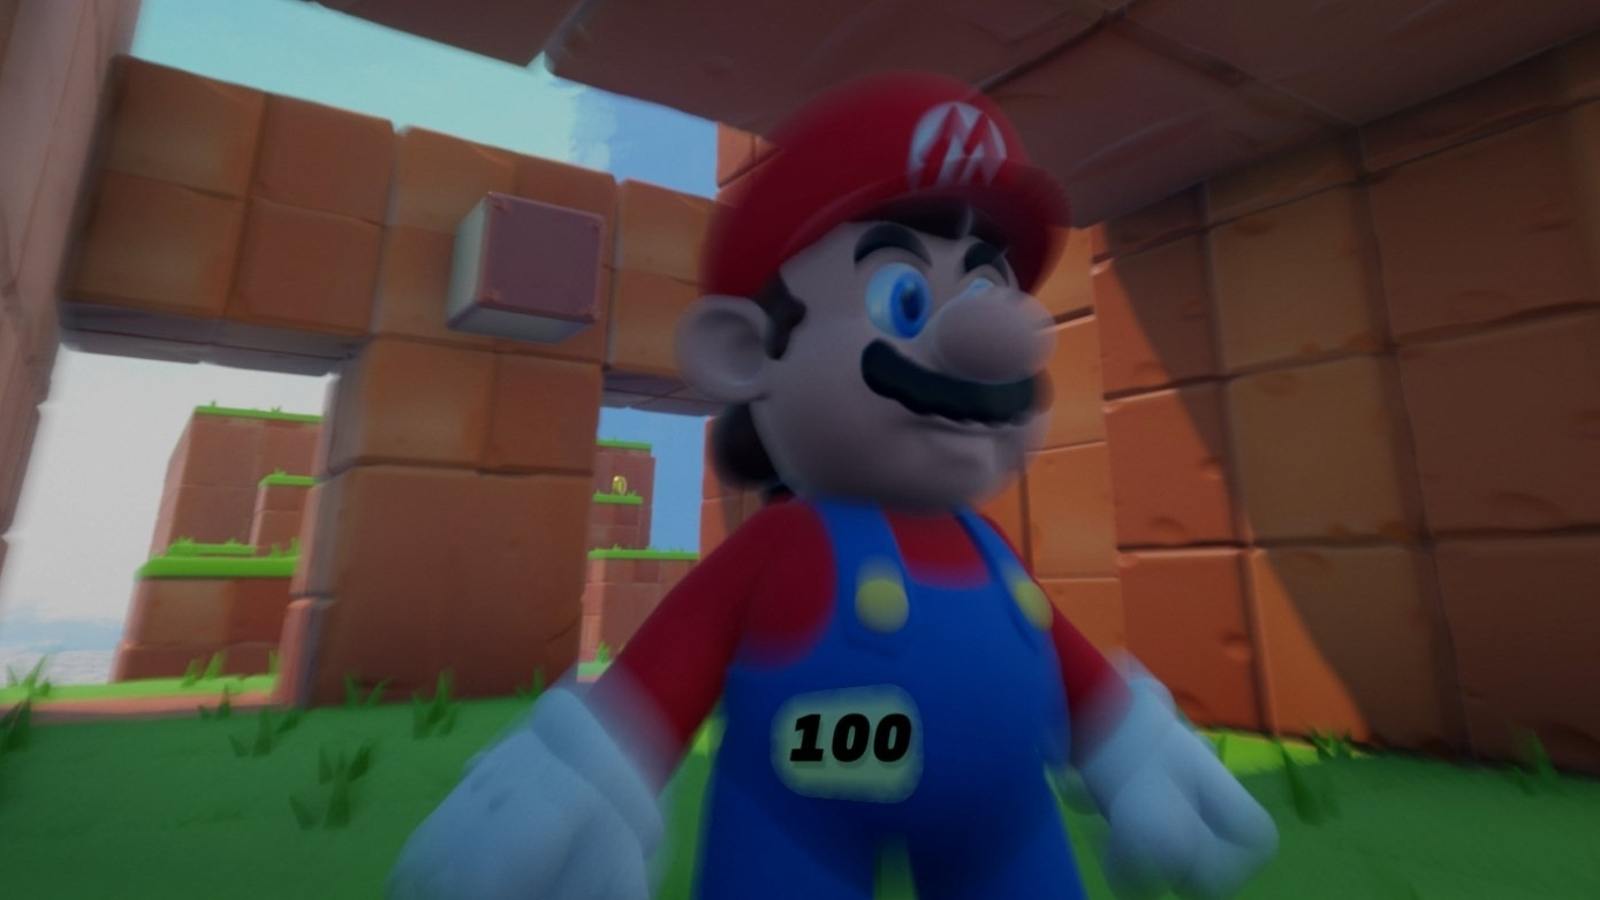 Super Mario on the PS4 in 'Dreams' 